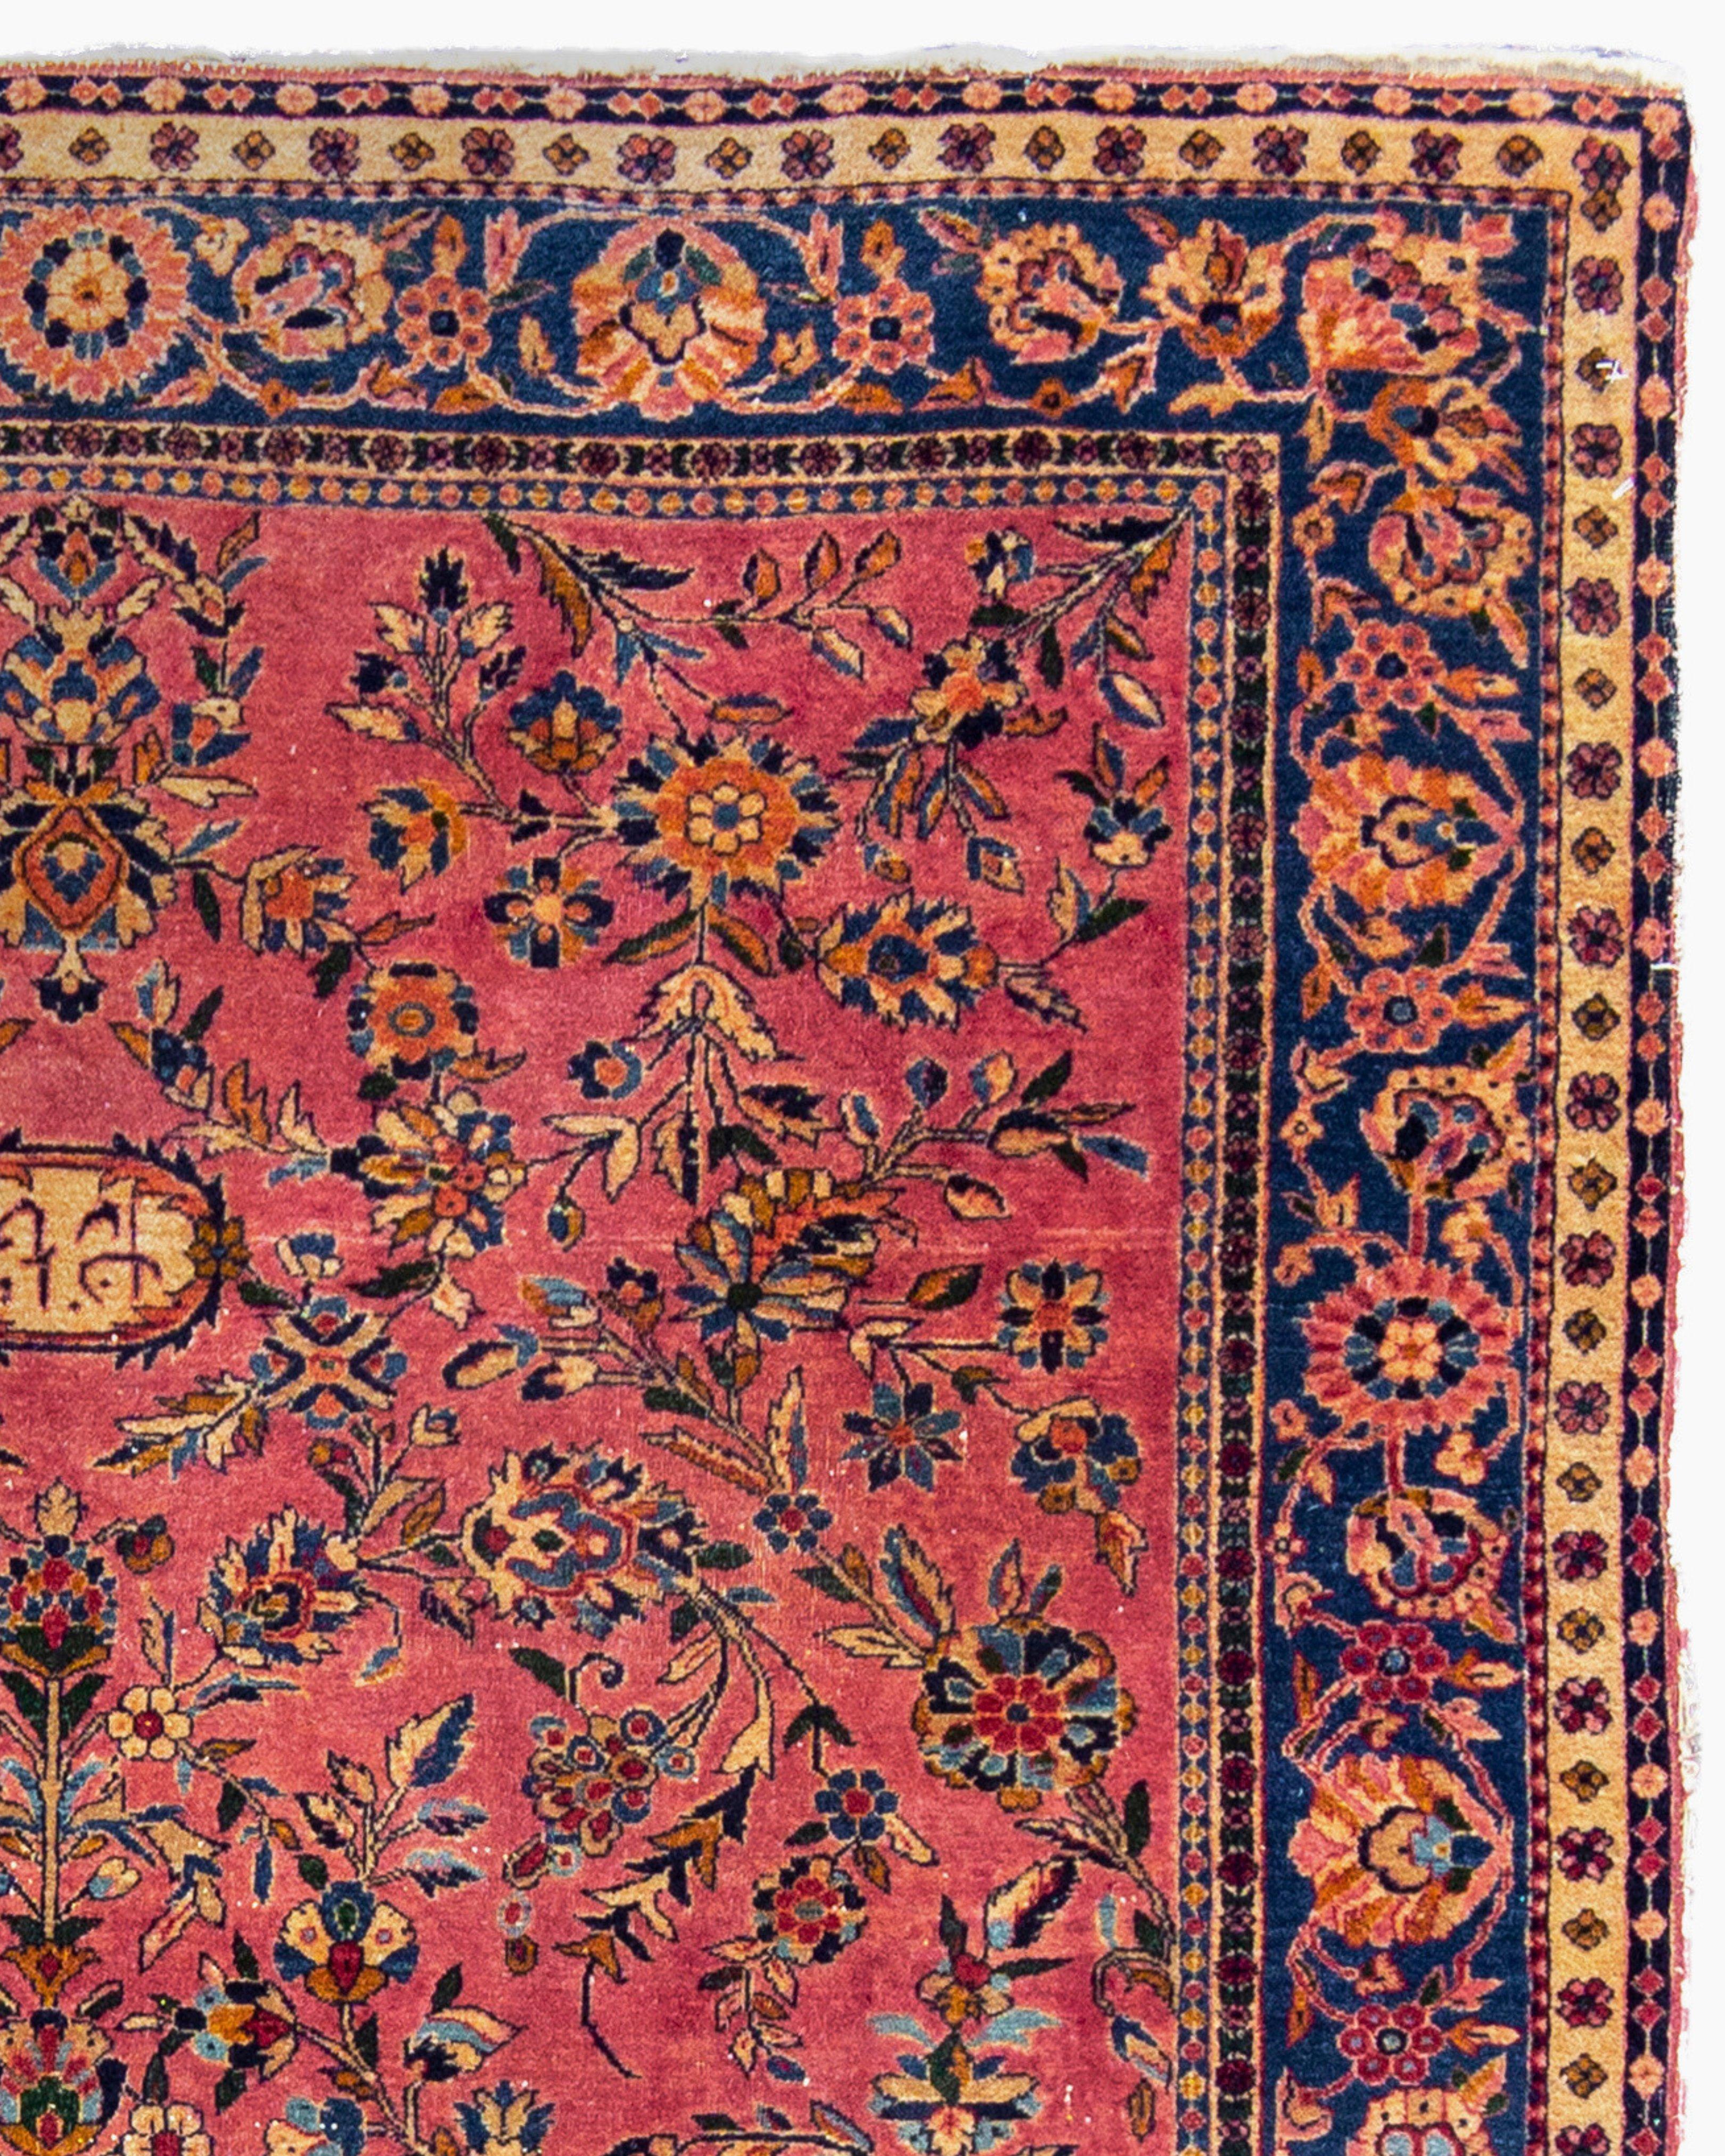 Ancien tapis persan Gazan Sarouk, c. 1900

Très bon état avec une légère usure. Multiples coins rongés et lisières effilochées.

Informations supplémentaires :
Dimensions : 4'2